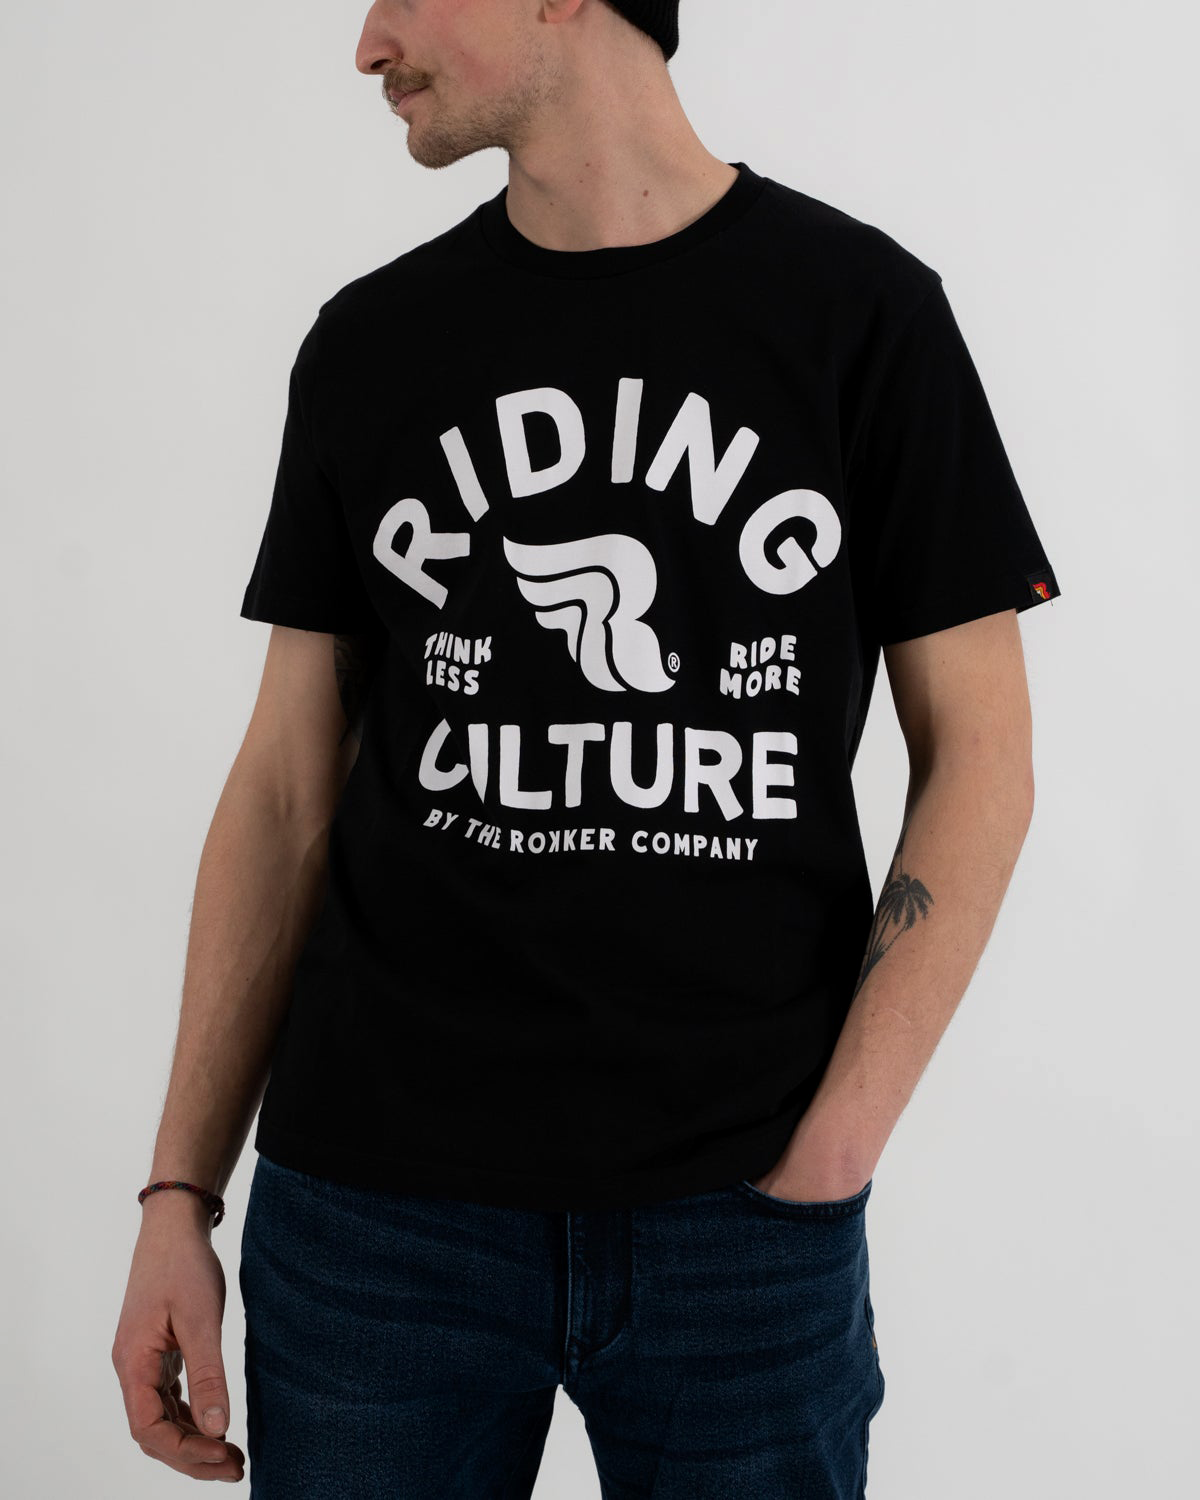 Riding Culture RC5001 Ride More, t-shirt - Noir/Blanc - XL